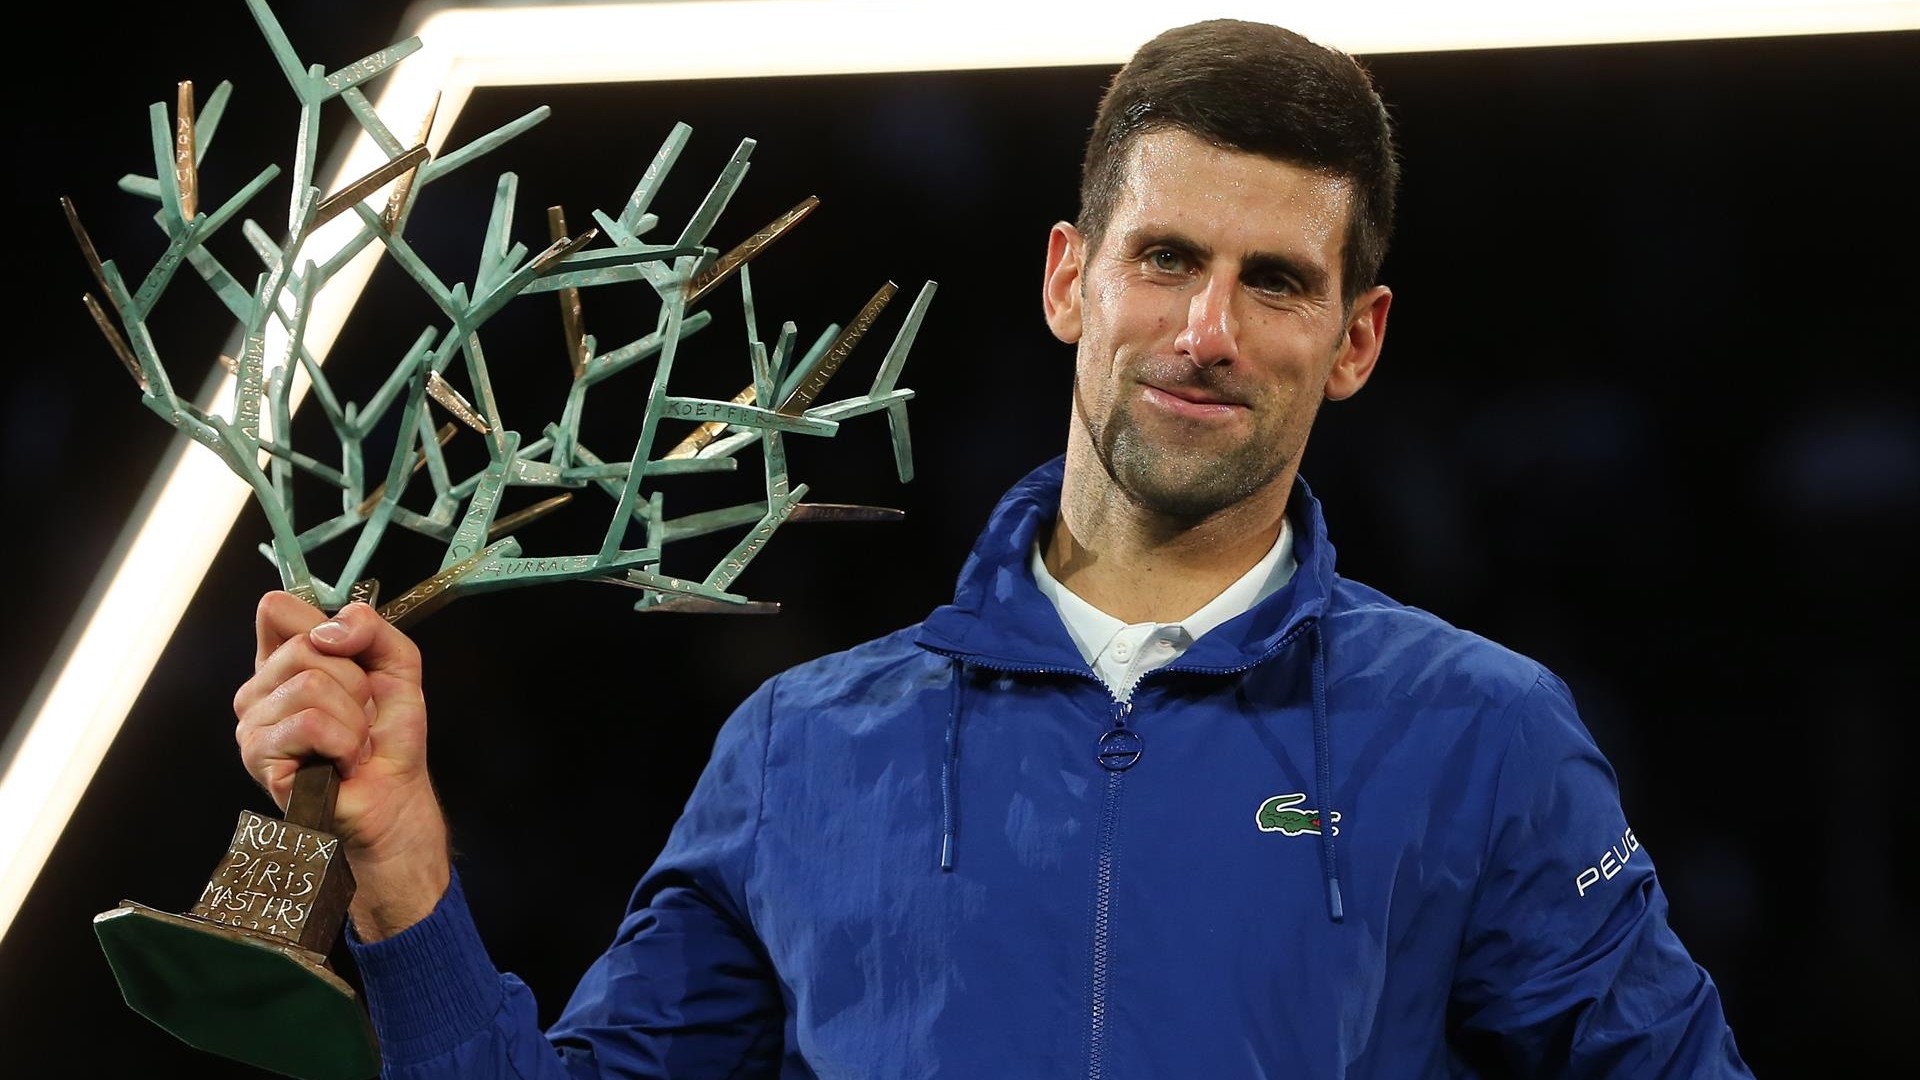 El tenista Novak Djokovic gana por sexta ocasión el Masters 1000 de París